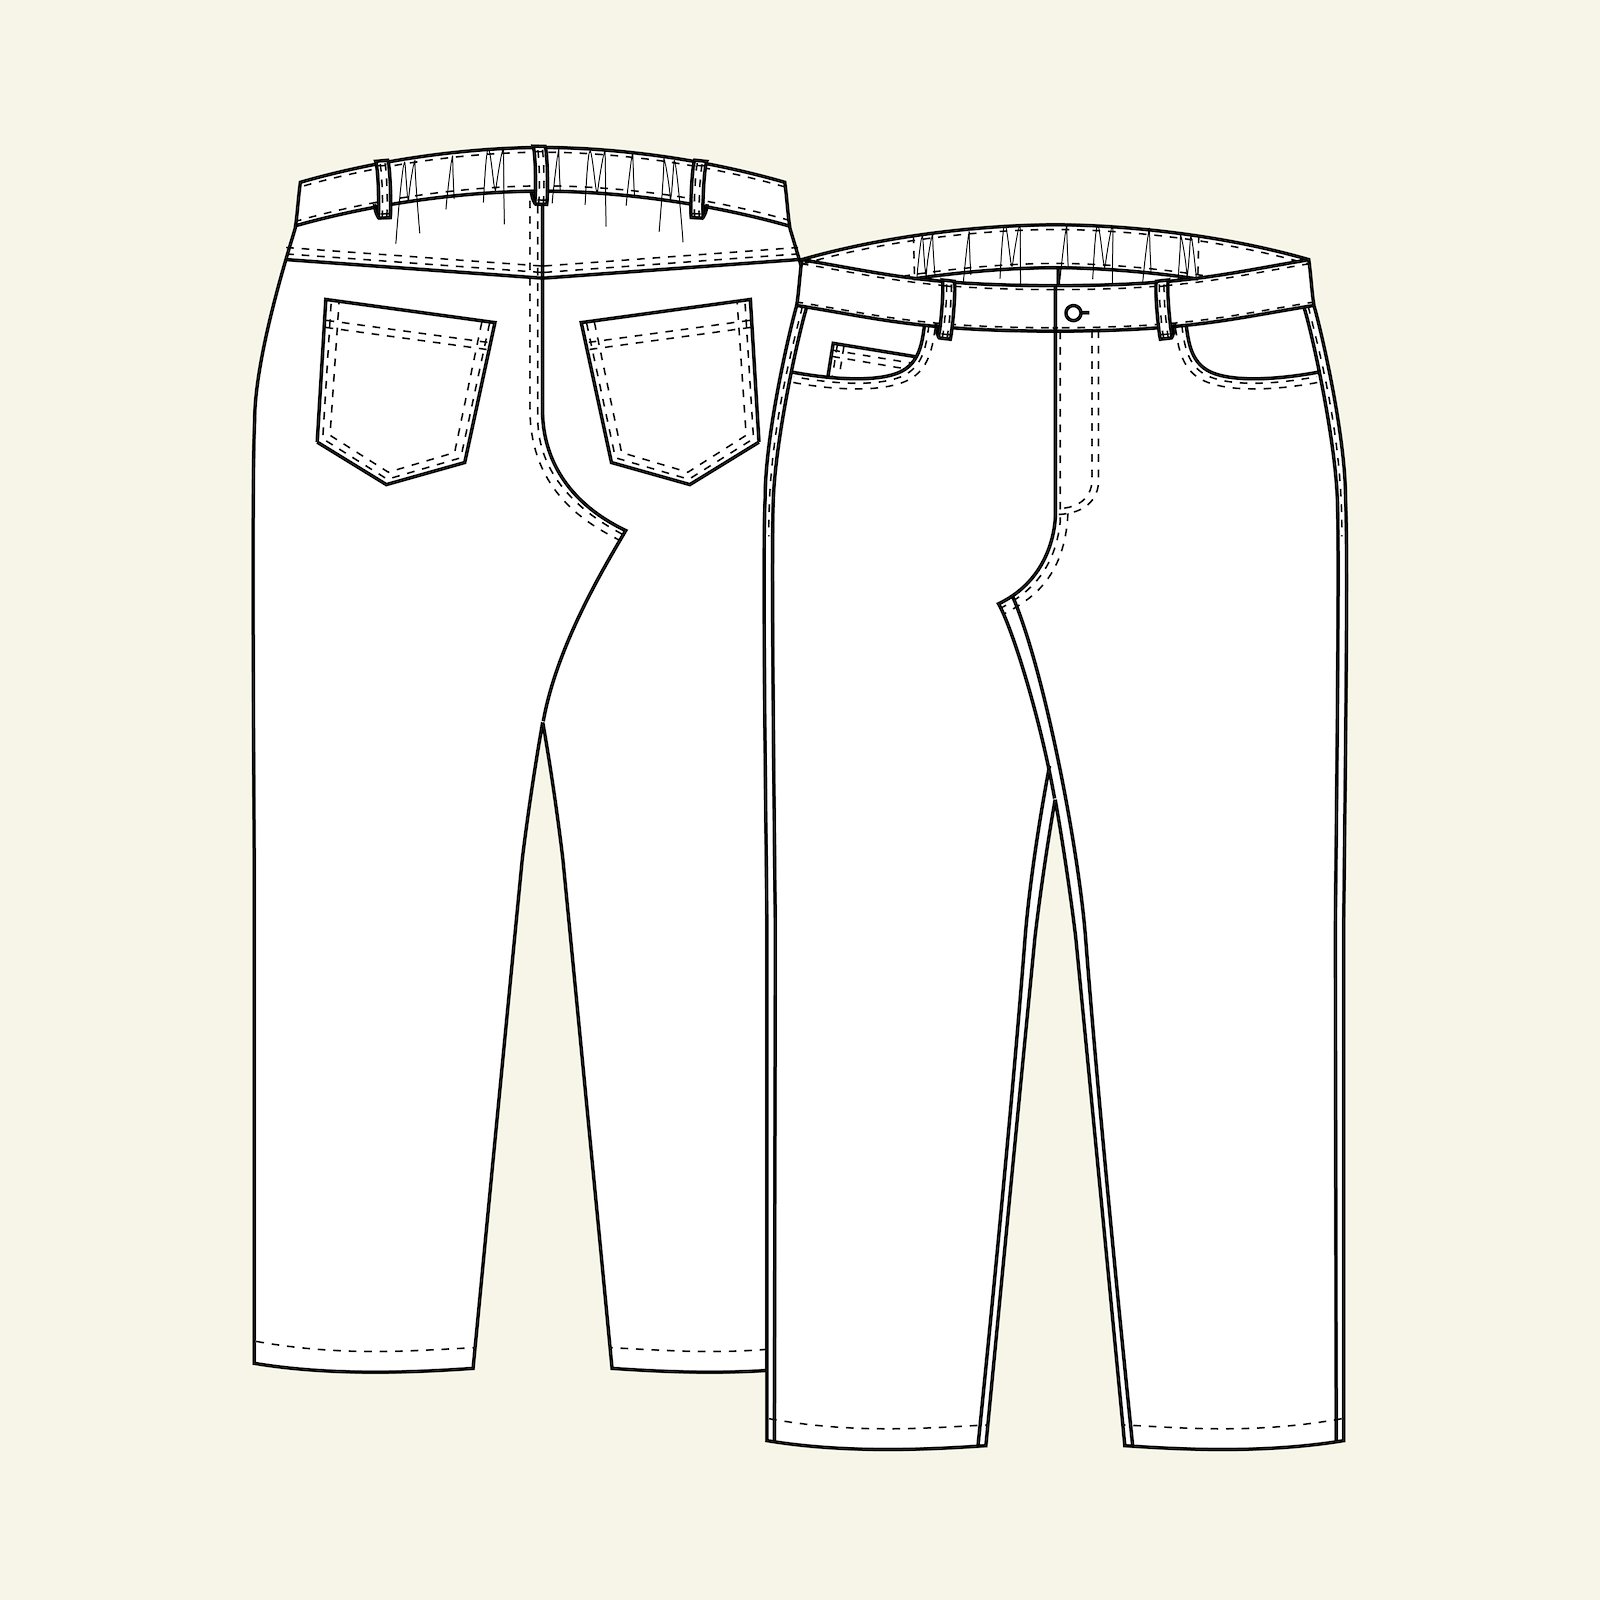 Klassisk jeans m/ strikk i linning bak 46-60 p70007000_p70007001_p70007002_p70007003_p70007004_pack_b